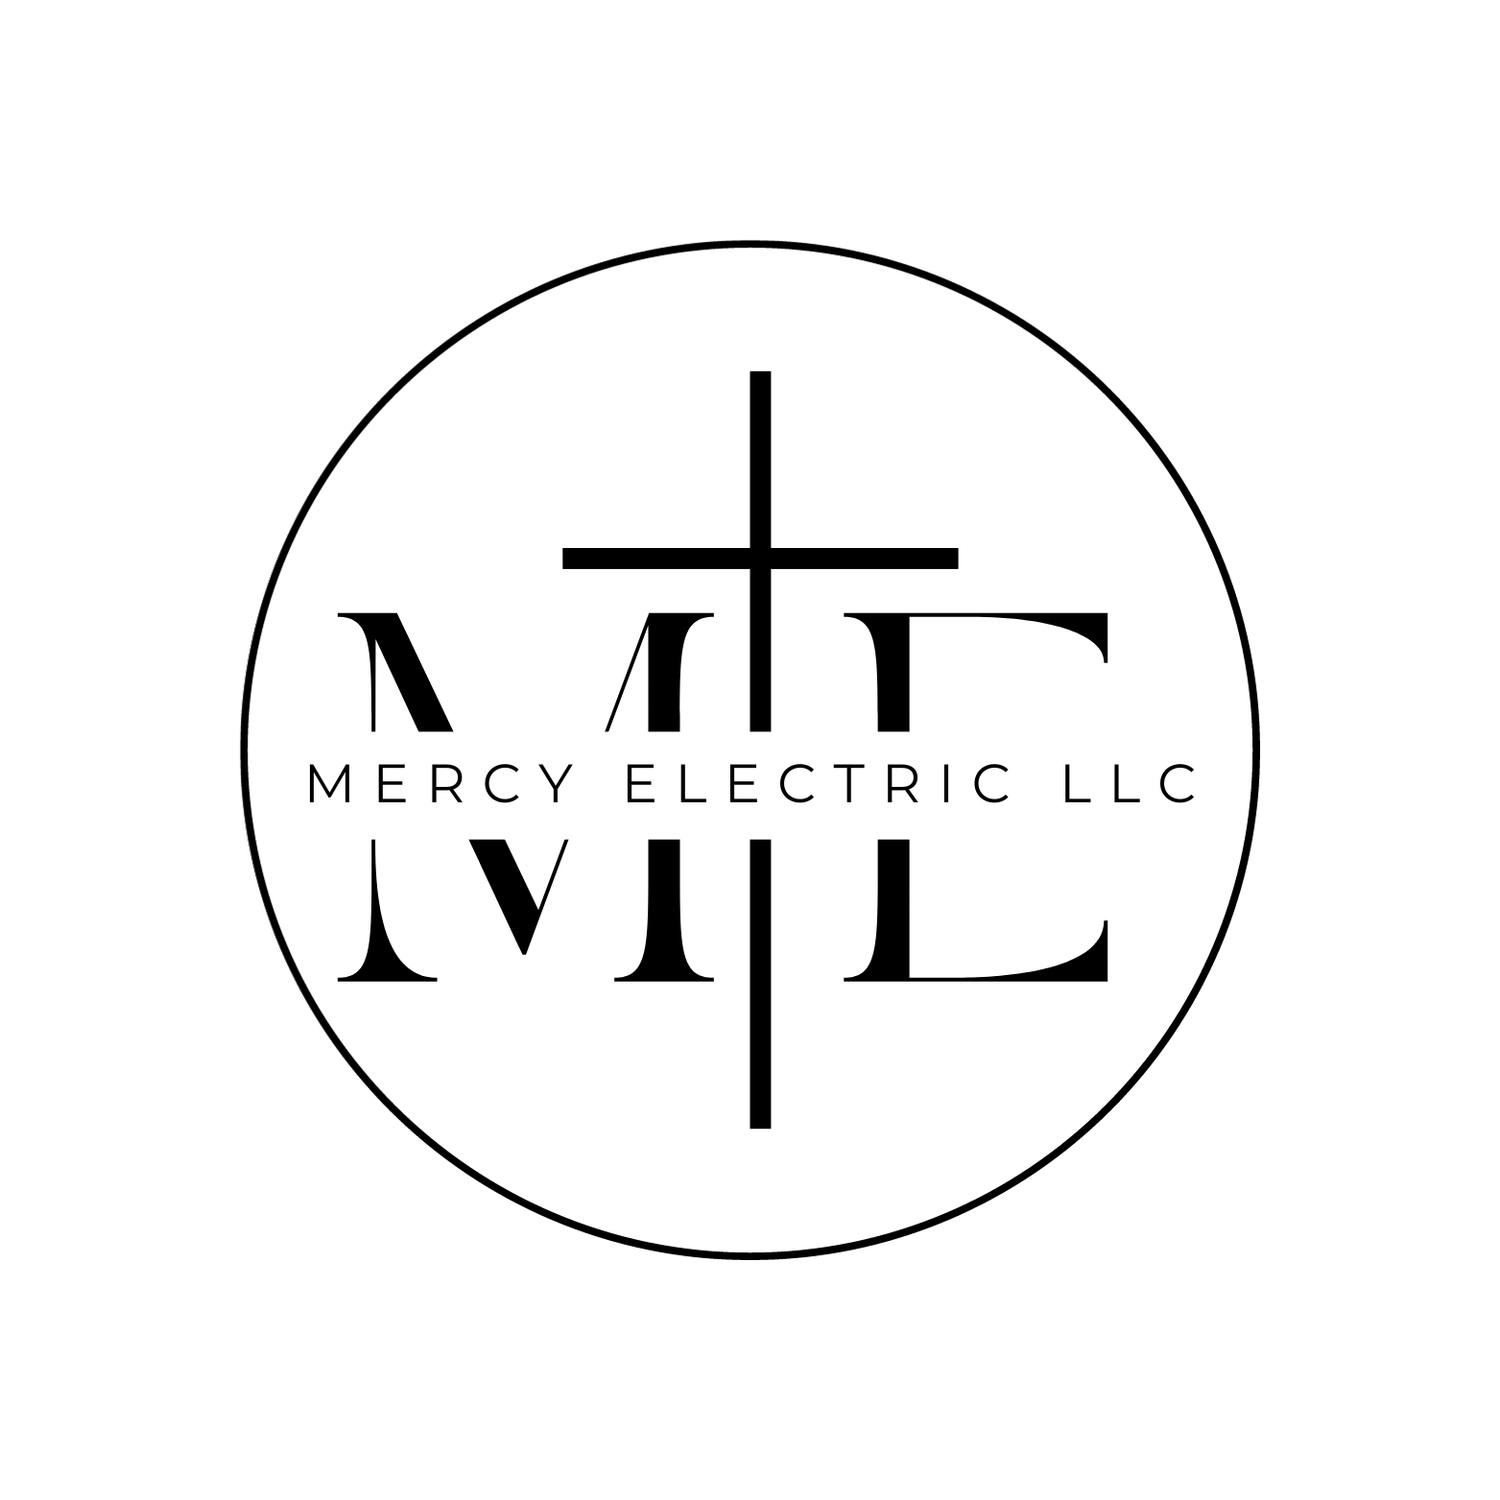 Mercy Electric LLC